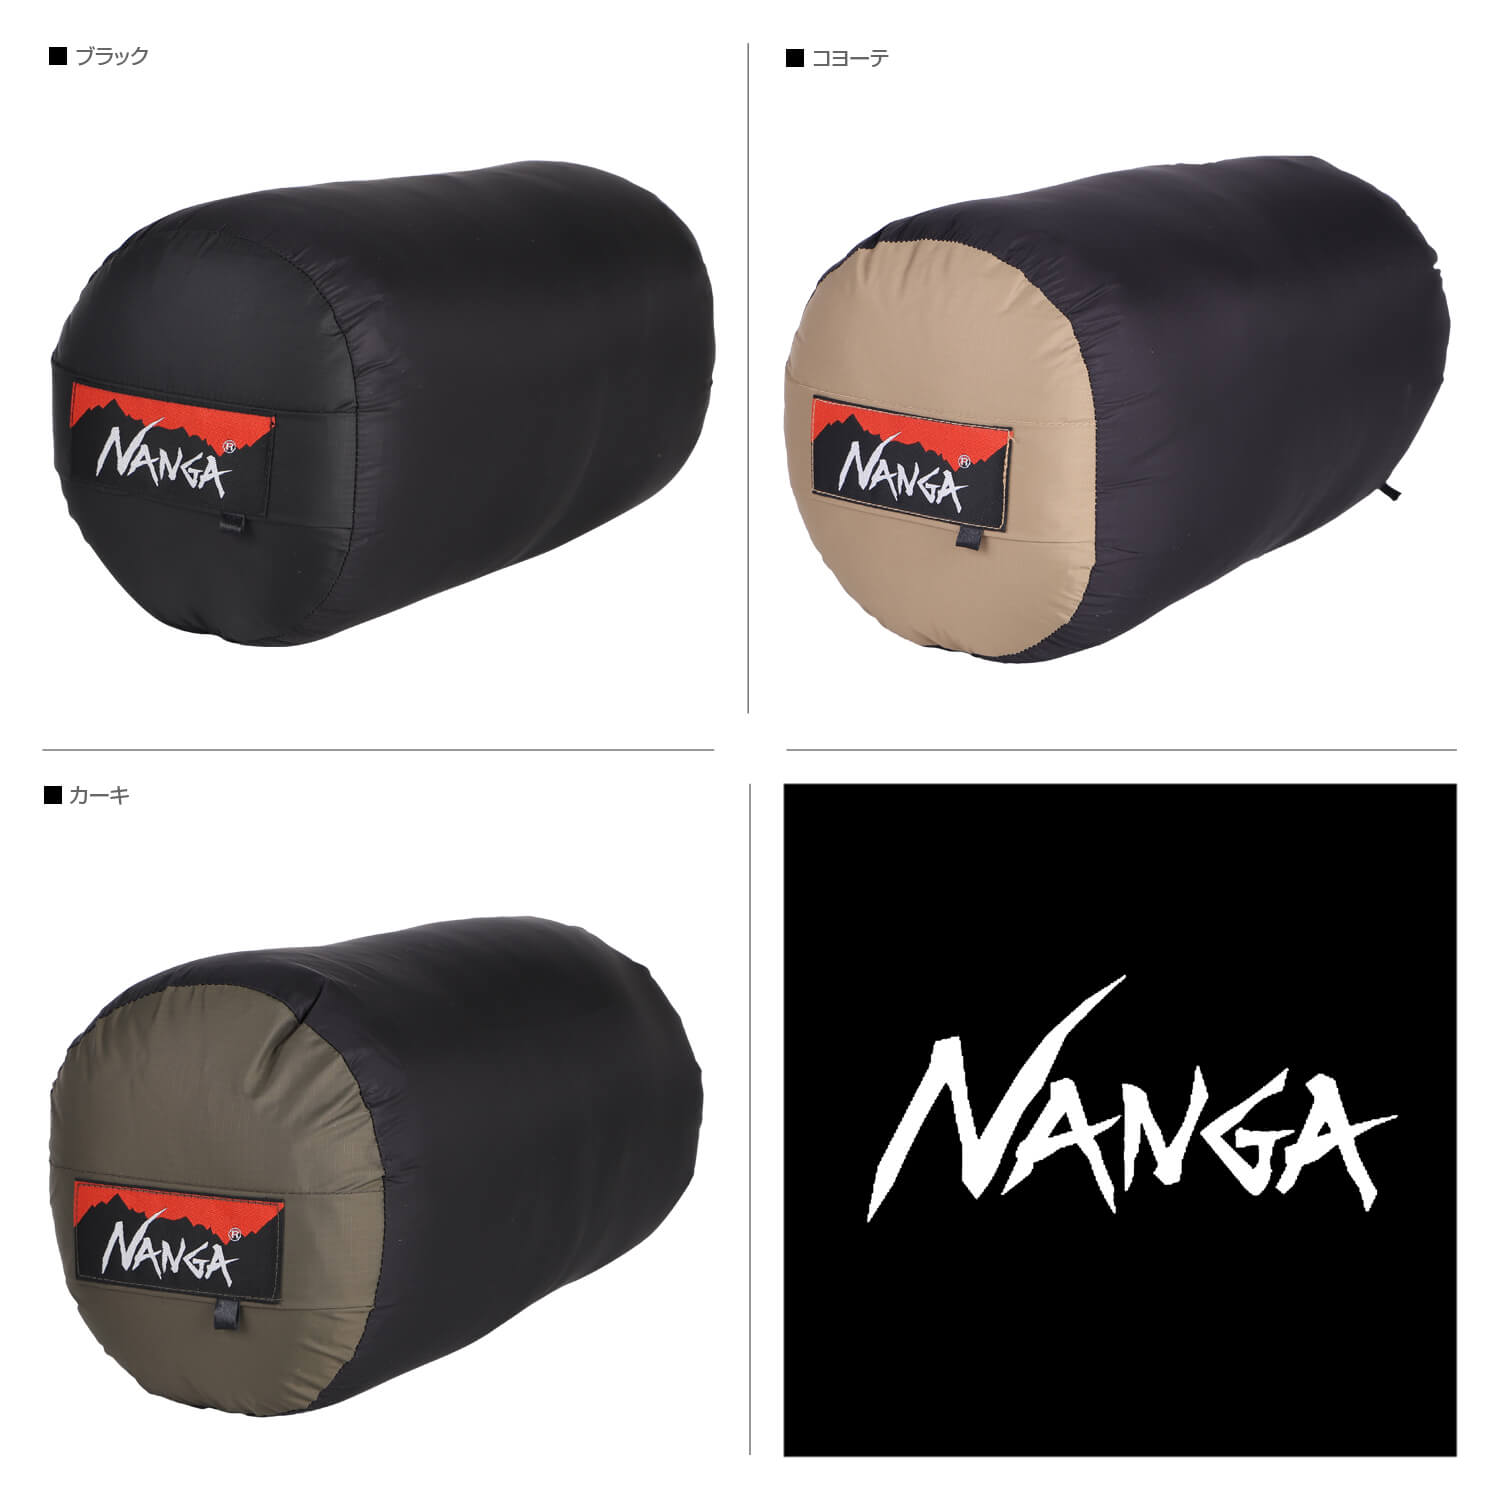 ナンガ NANGA シュラフ 寝袋 オーロラ ダウン マミー型 AURORA 